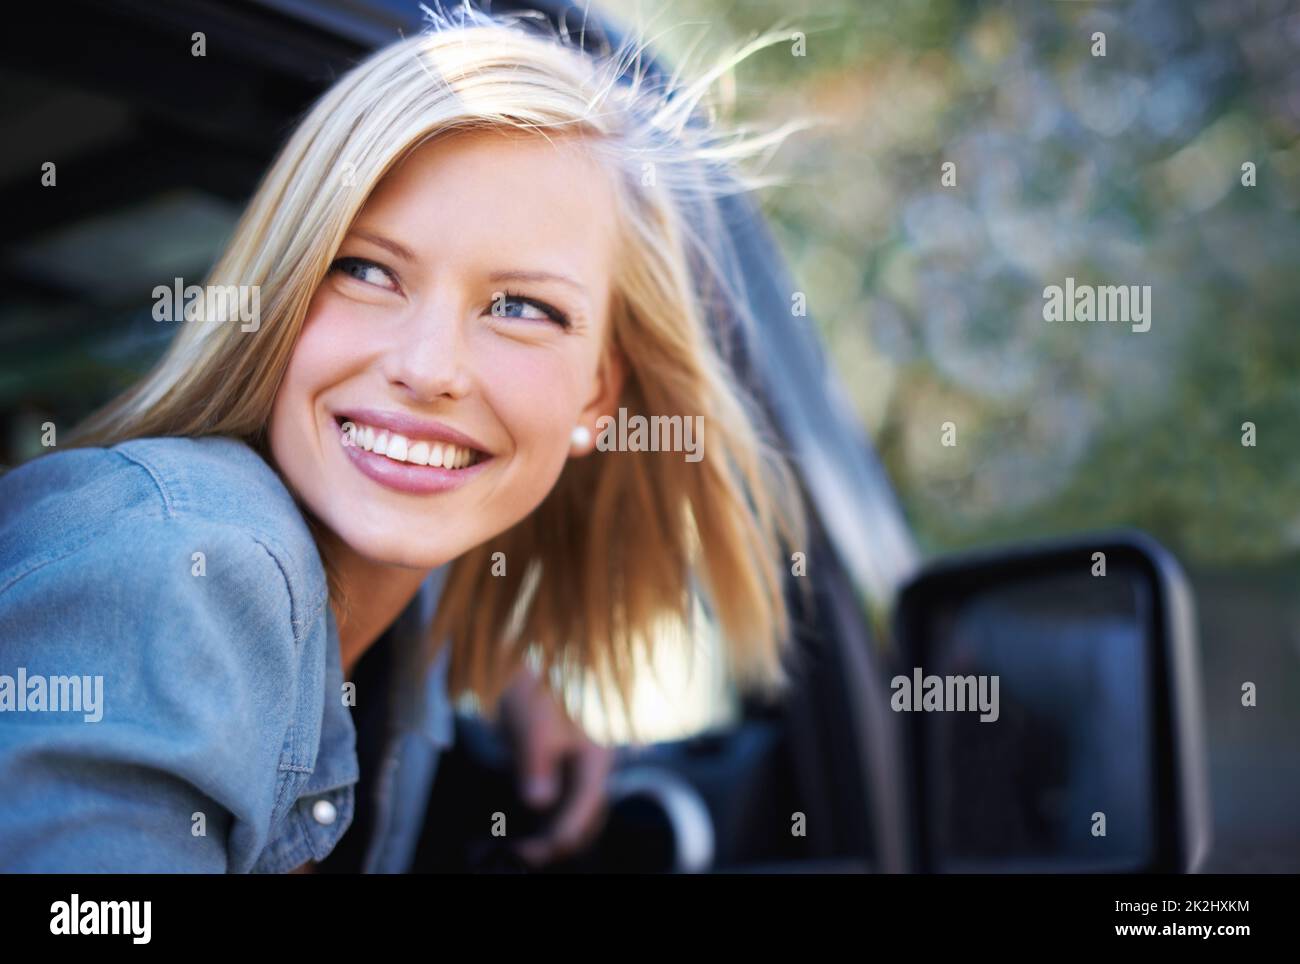 Sich im Freien sorglos fühlen. Eine junge Frau spürt die Brise in ihren Haaren durch ein offenes Autofenster. Stockfoto